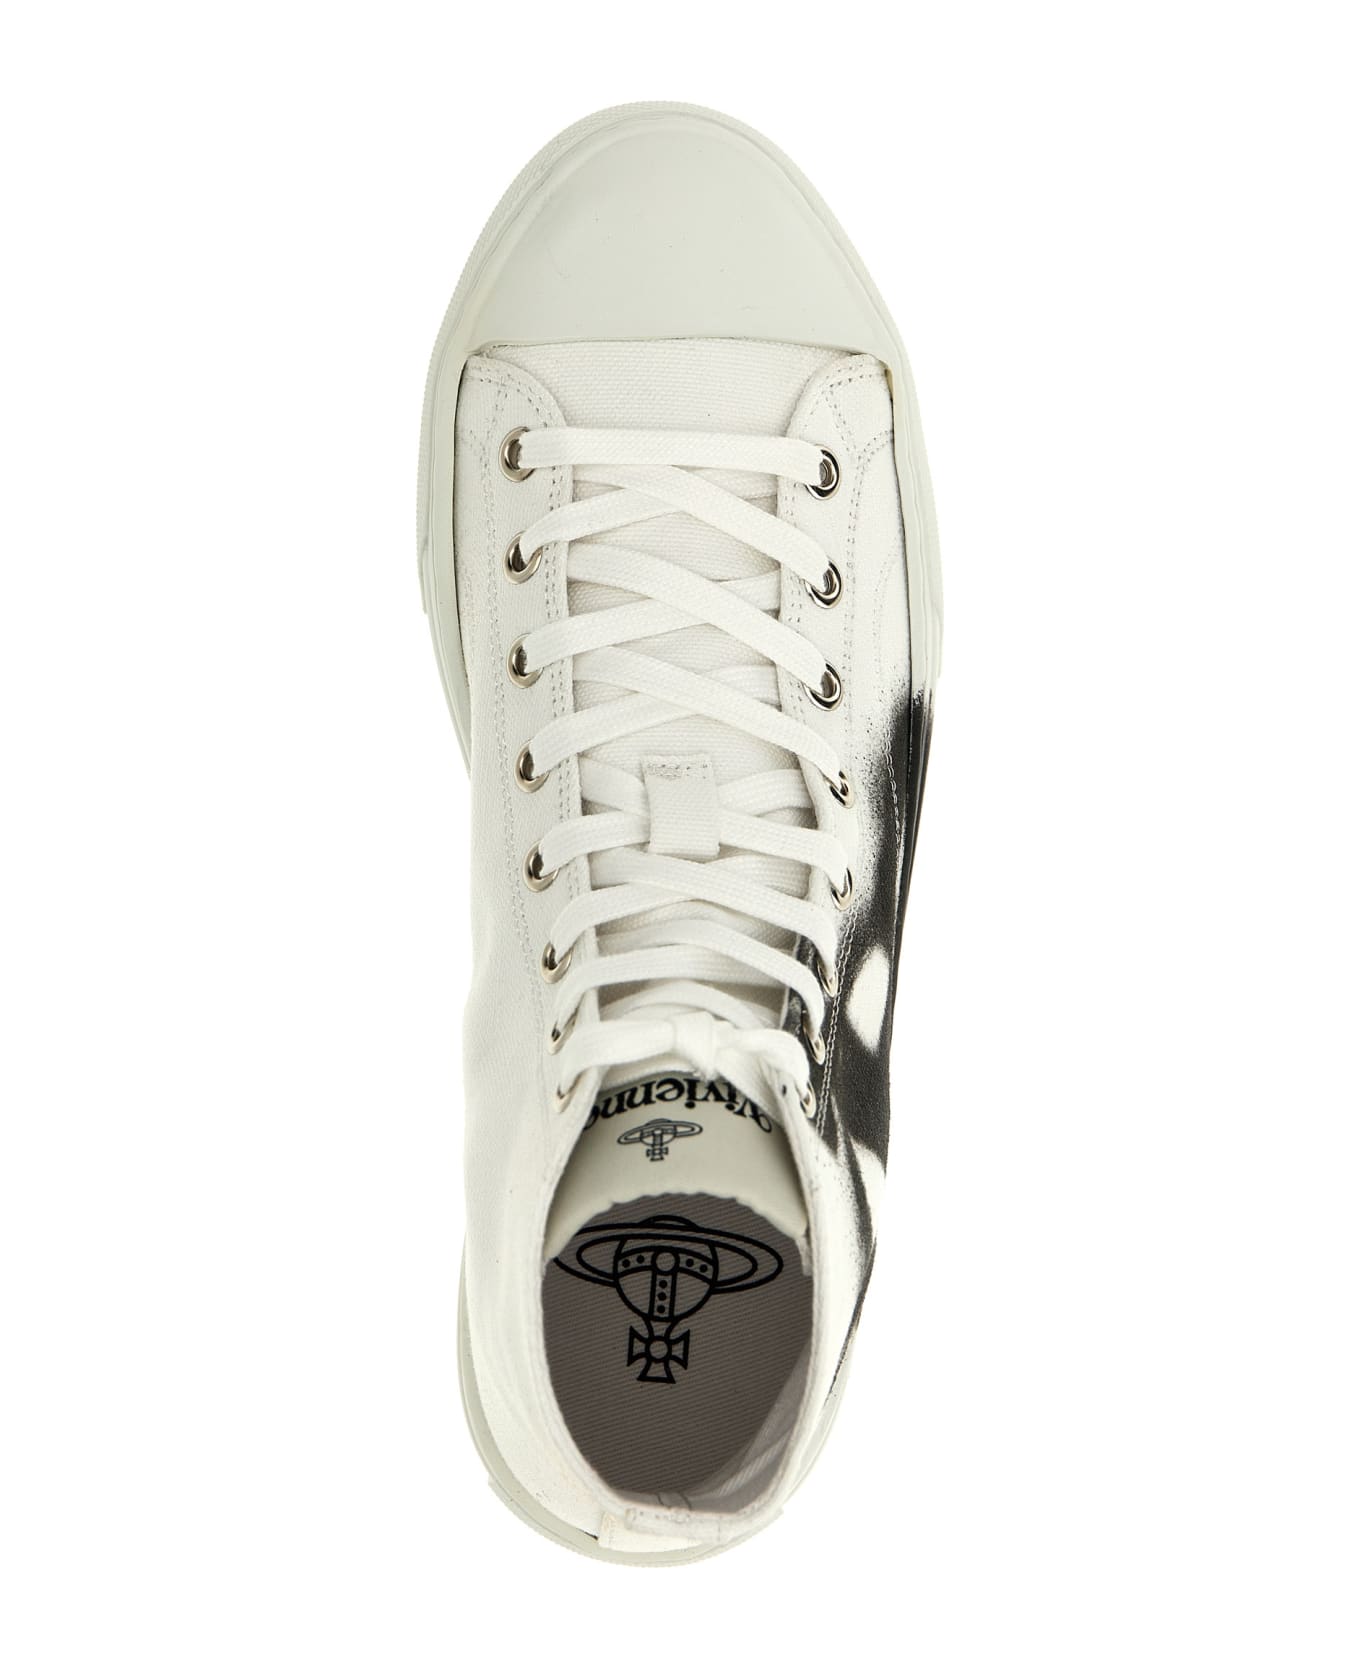 Vivienne Westwood 'plimsoll' Sneakers - White/Black